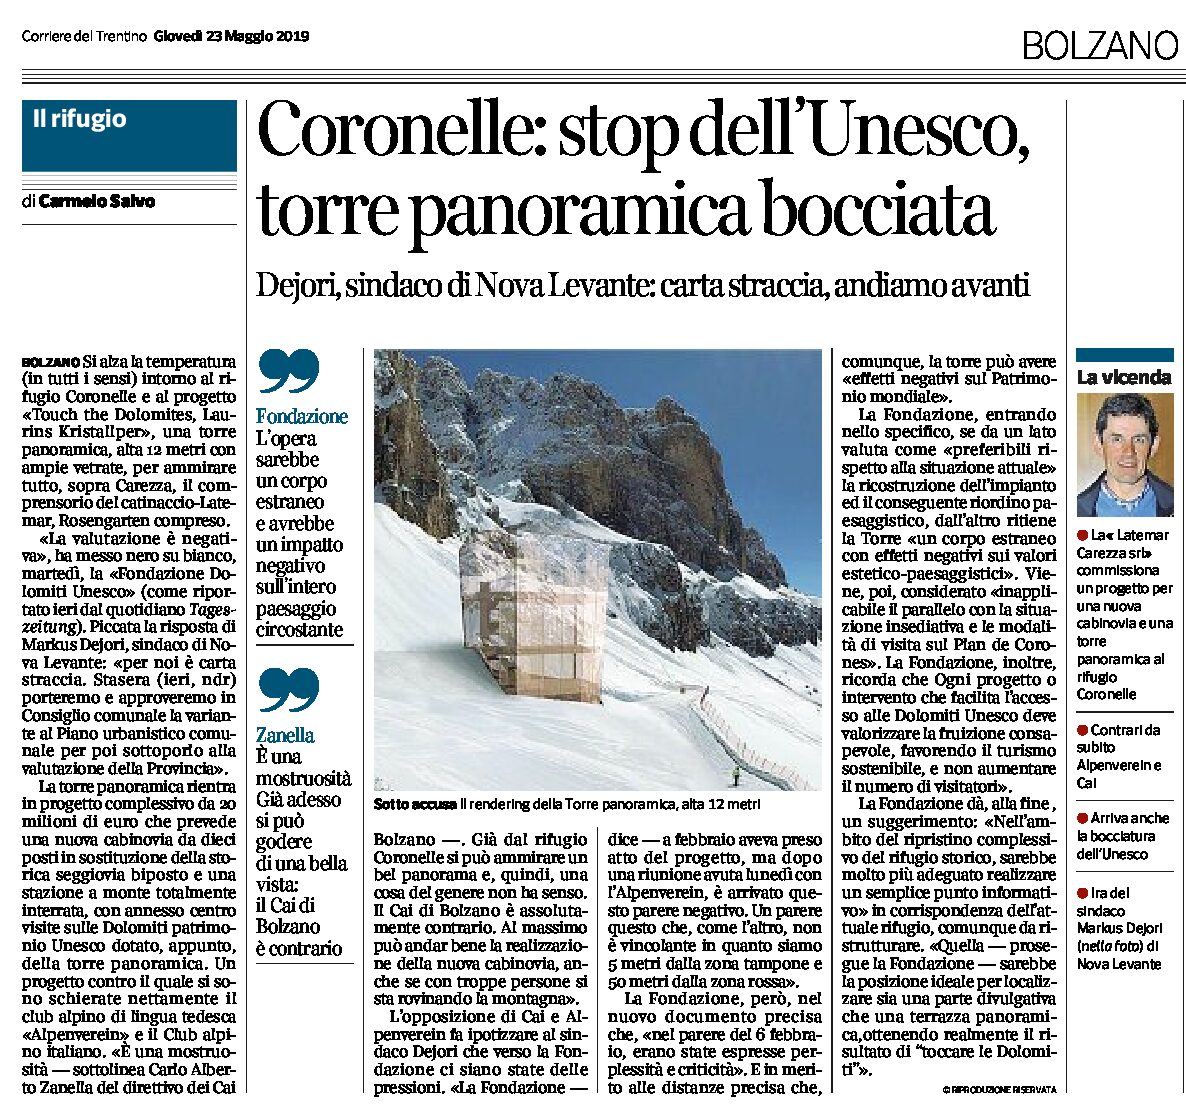 Carezza, Coronelle: torre panoramica, stop dell’Unesco. Dejori “carta straccia, andiamo avanti”